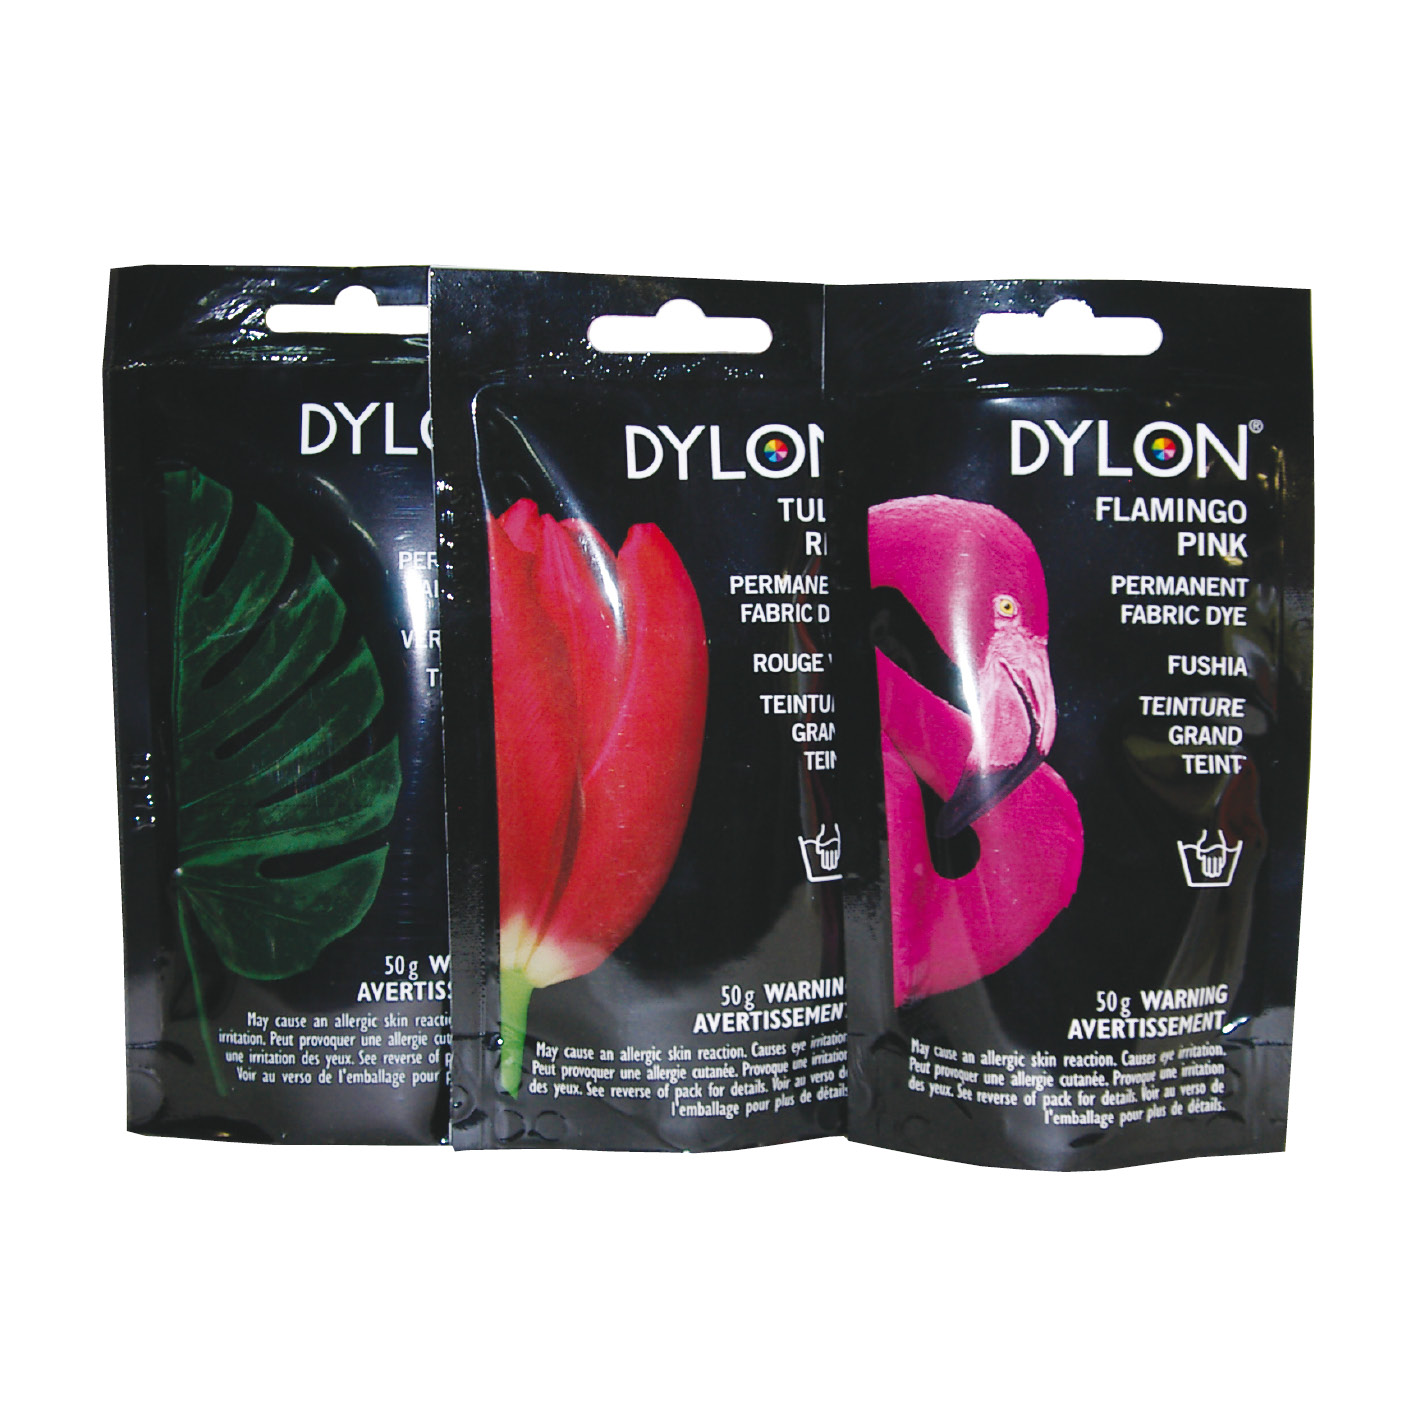 Dylon Fabric Dyes - S&S Wholesale